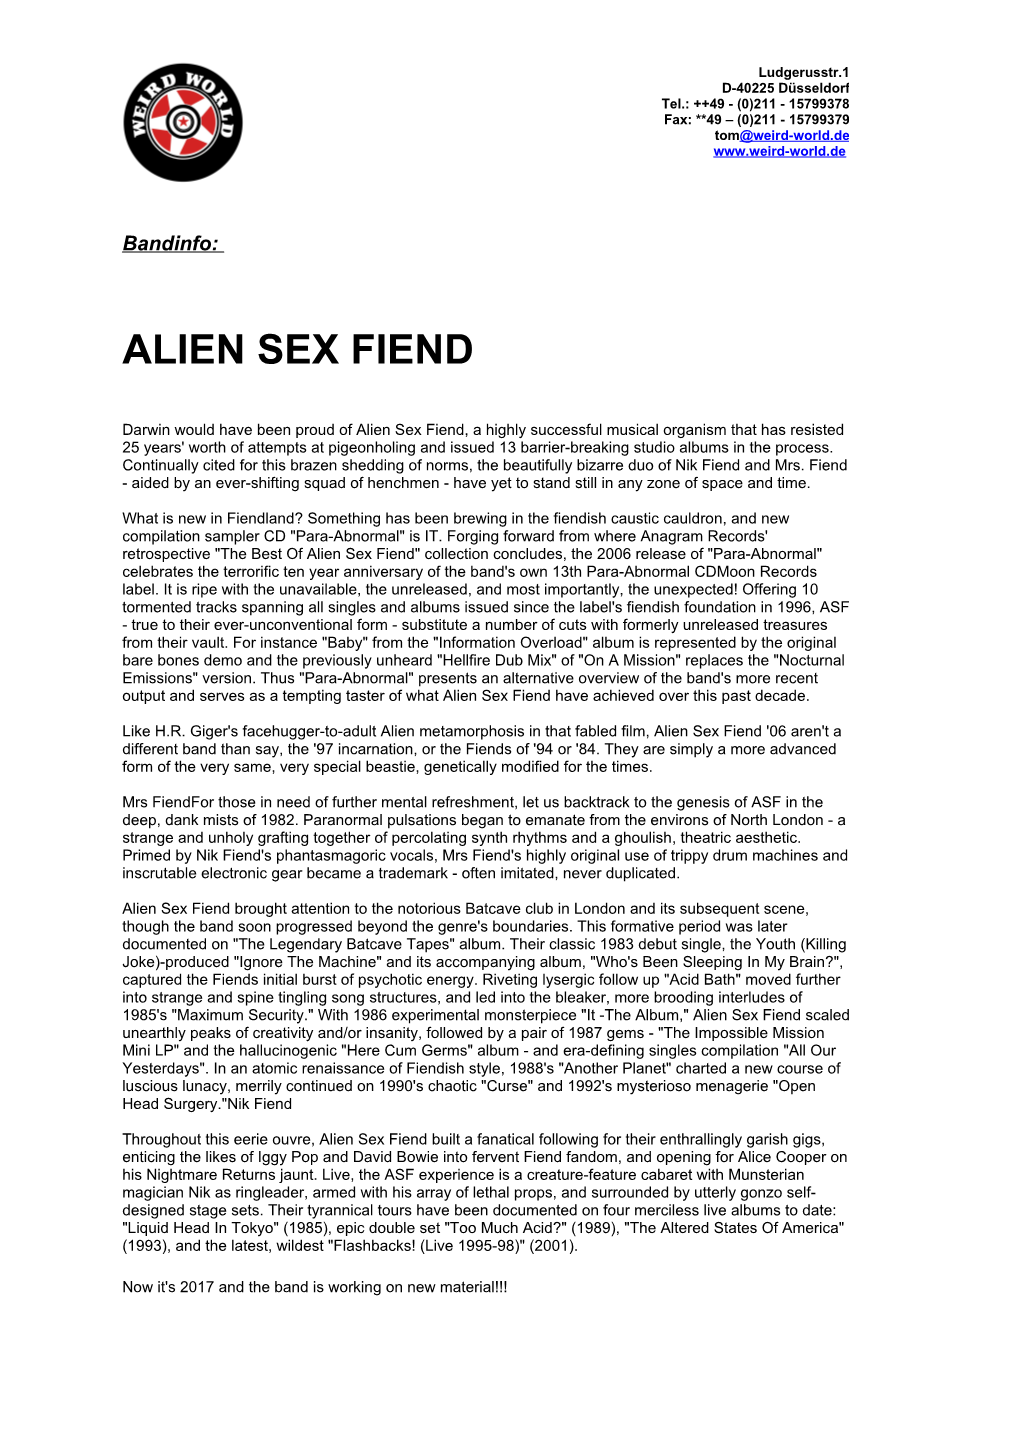 Alien Sex Fiend Ww Info.Pdf